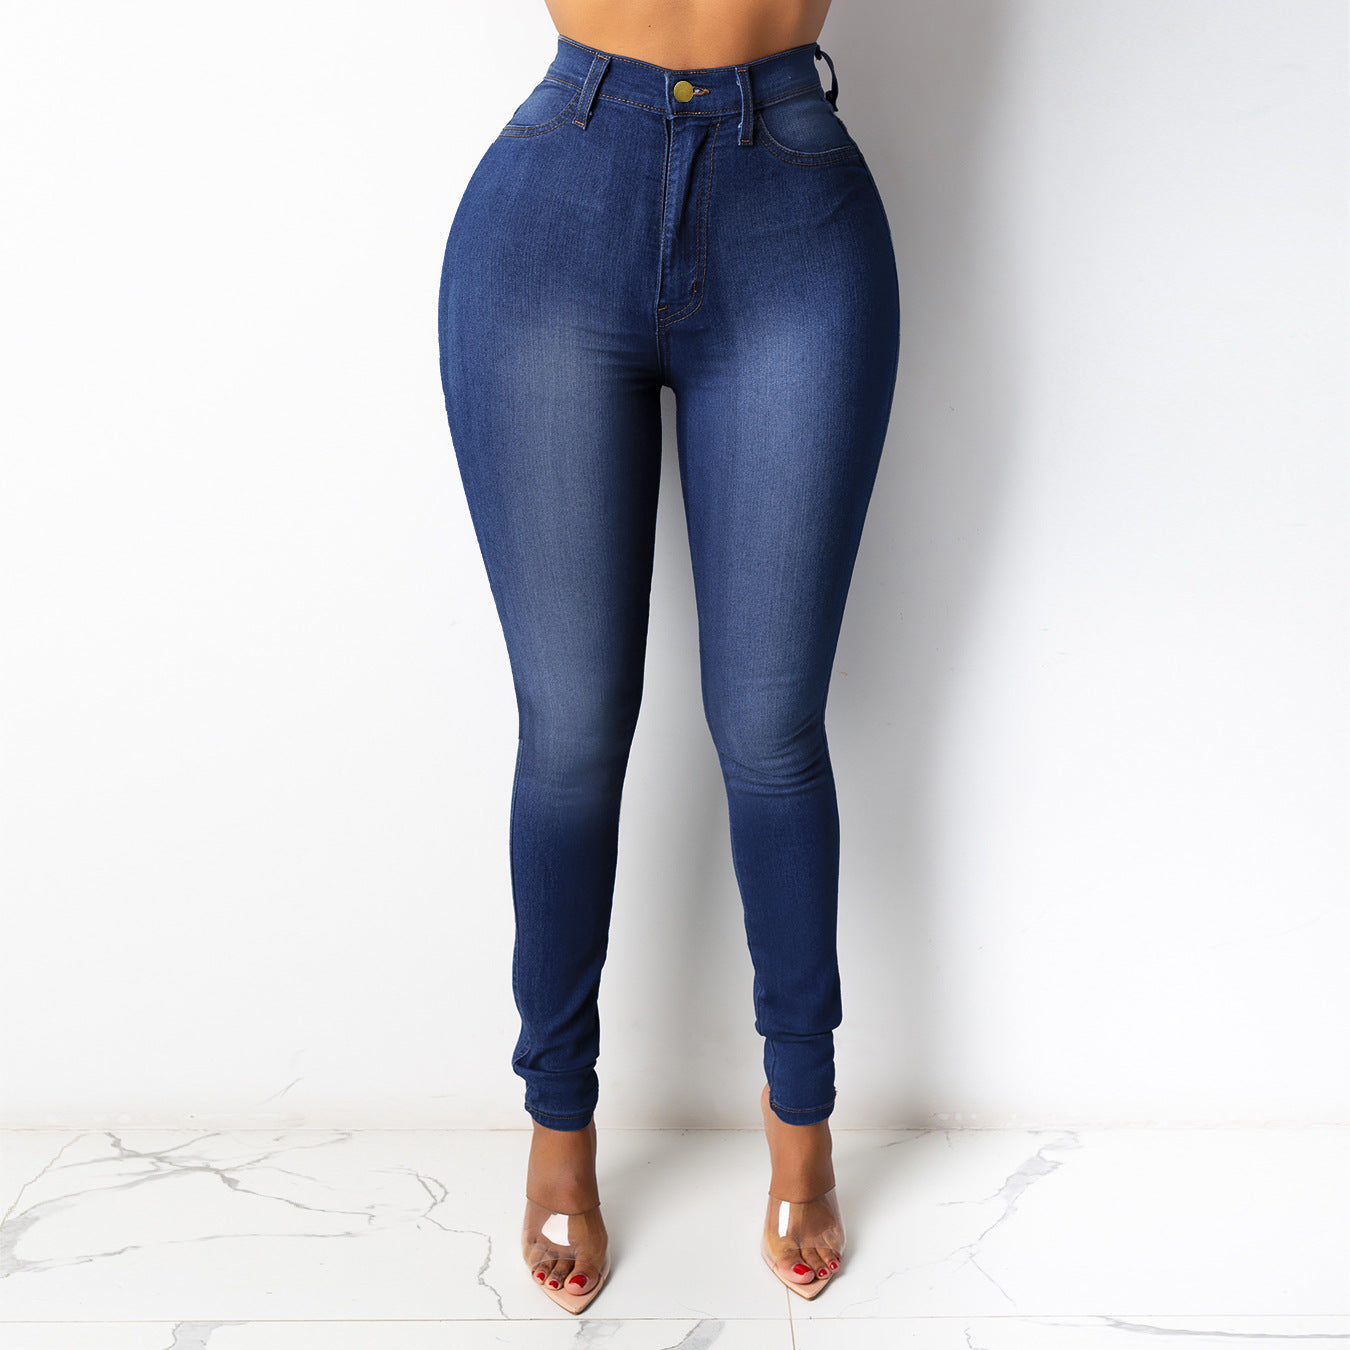 Fashion Women's Wear Jeans Slim Fit